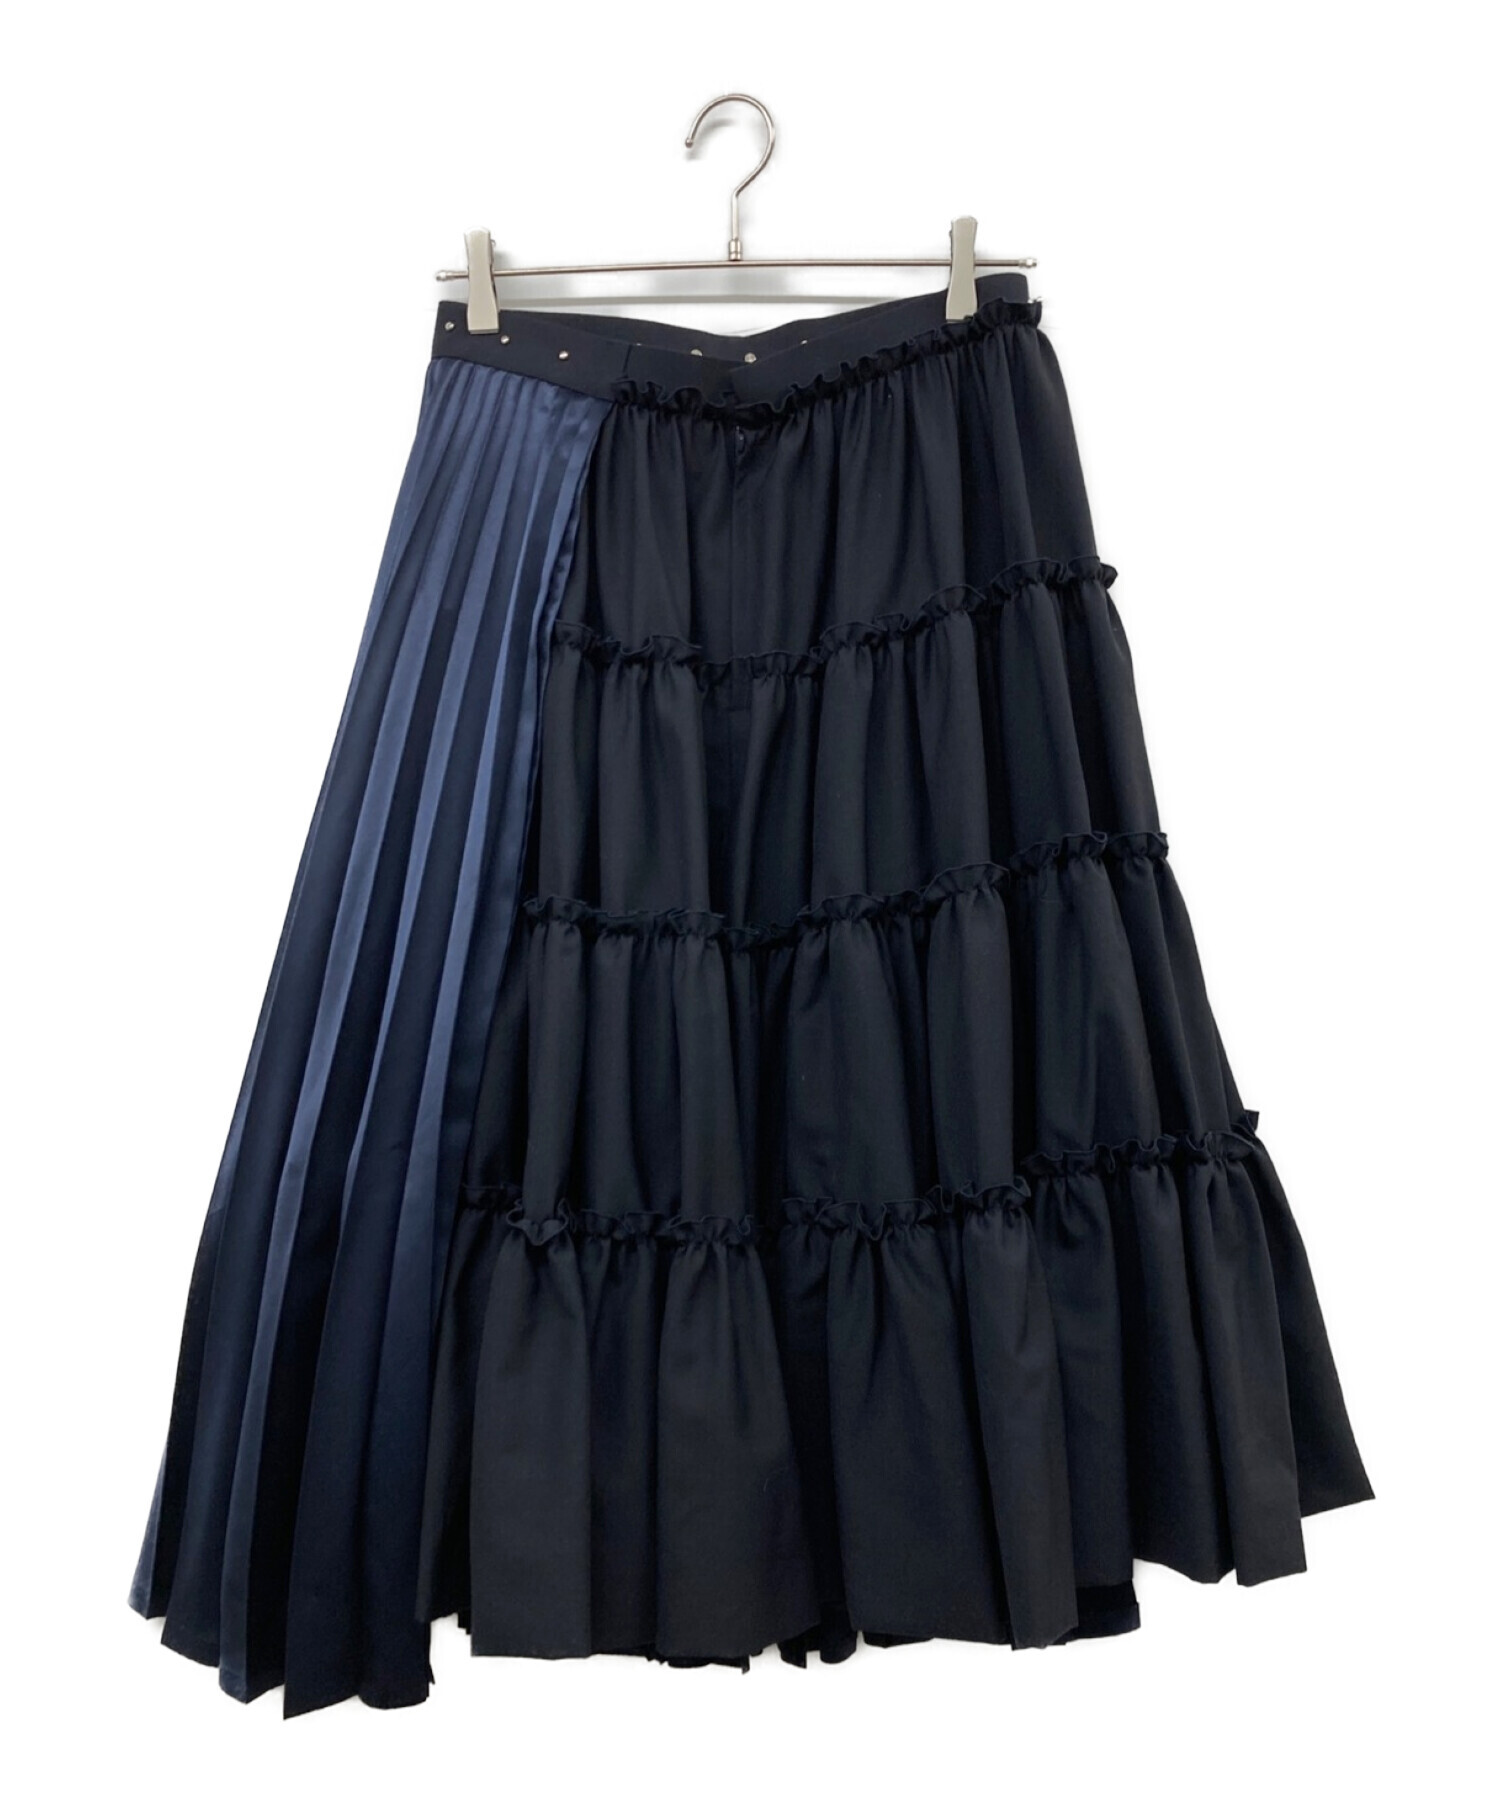 noir kei ninomiya (ノワール ケイ ニノミヤ) AD2021 デザイン切替スカート ネイビー サイズ:S